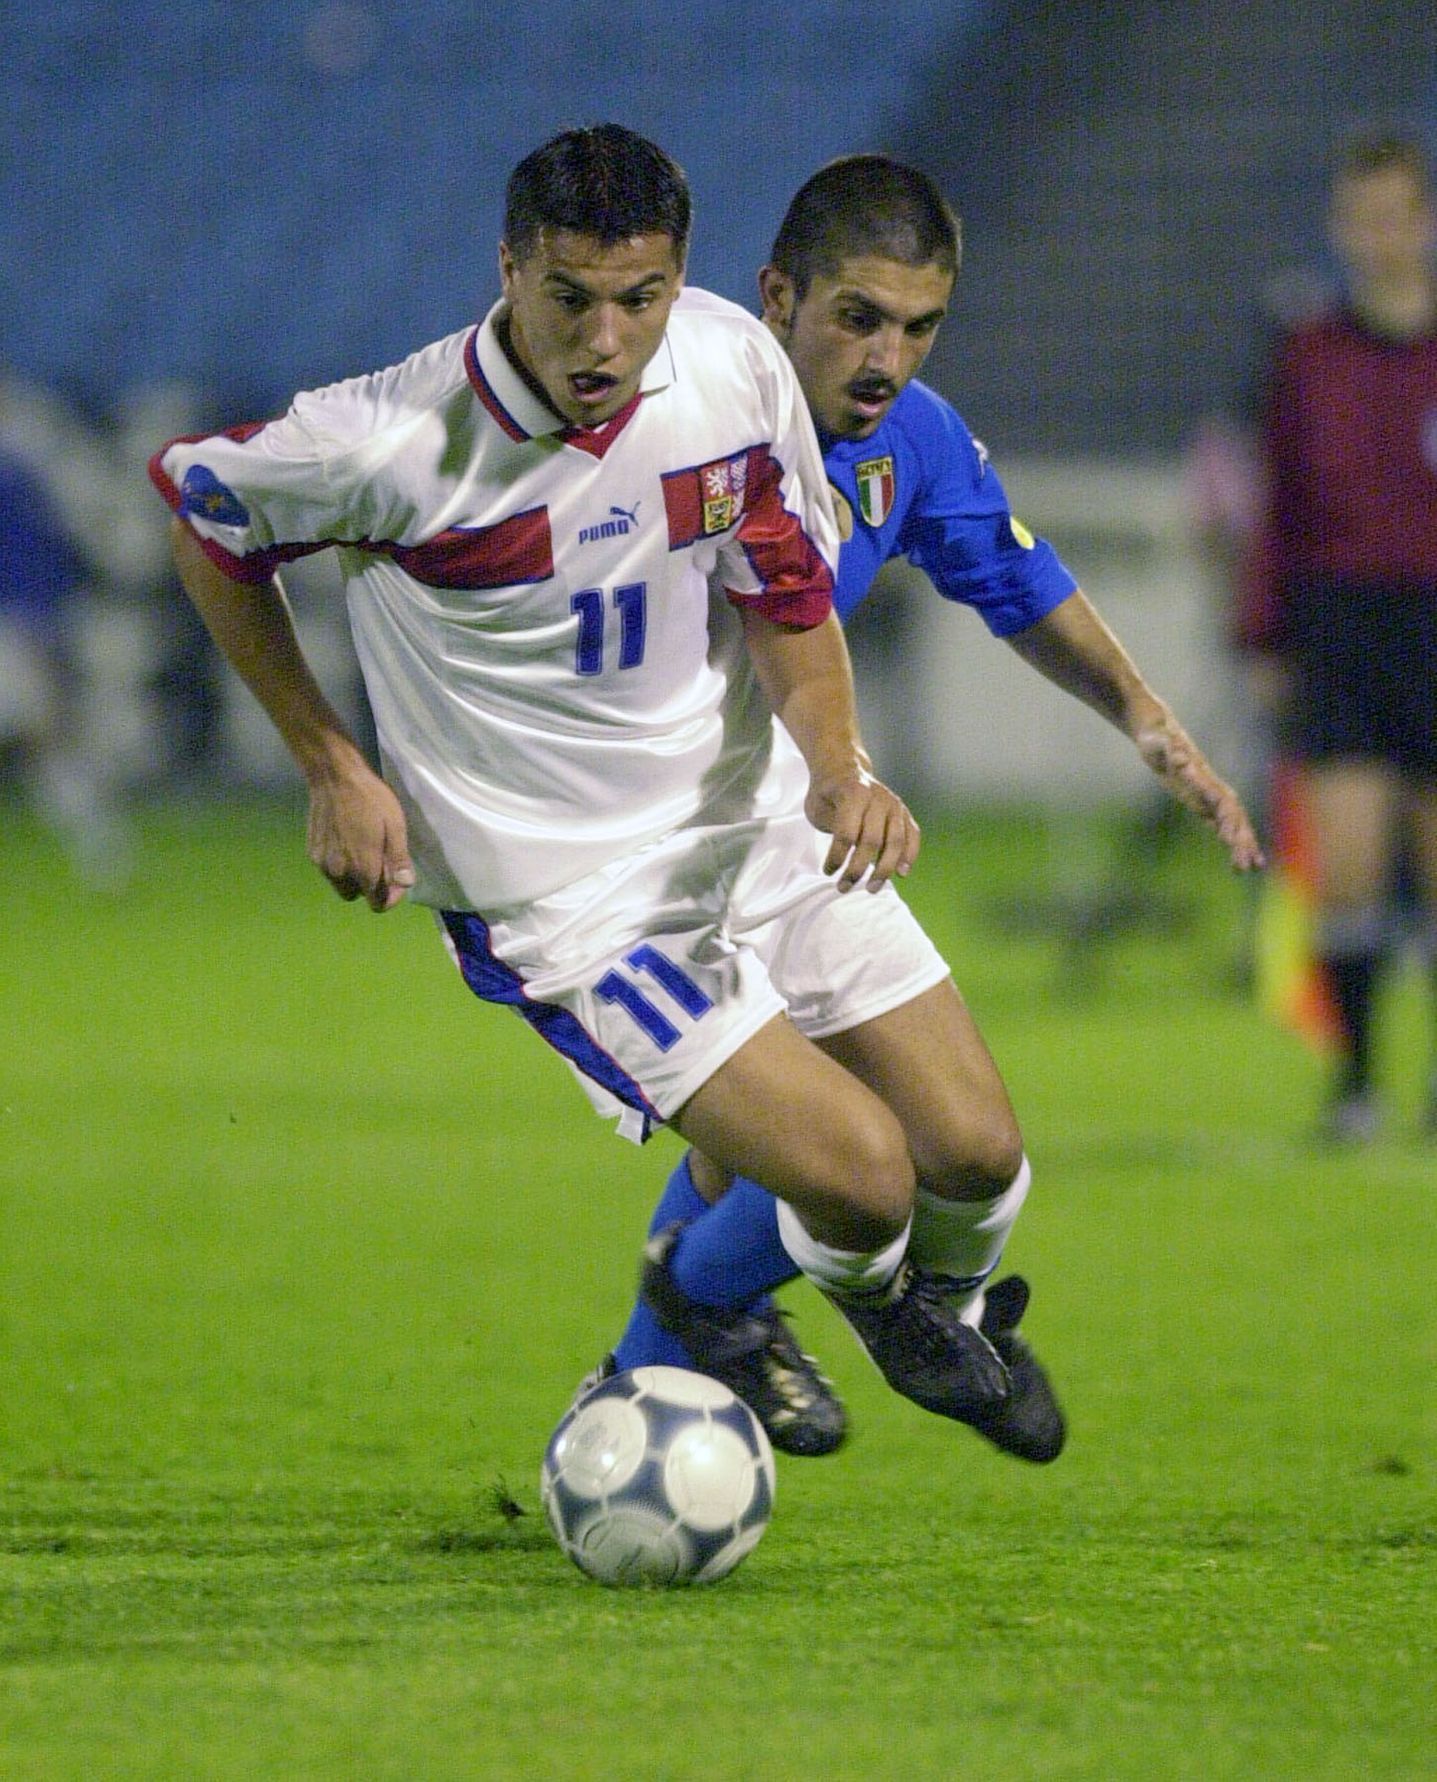 Fotbal, Česko 21 - Itálie 21, ME 2000: Milan Baroš